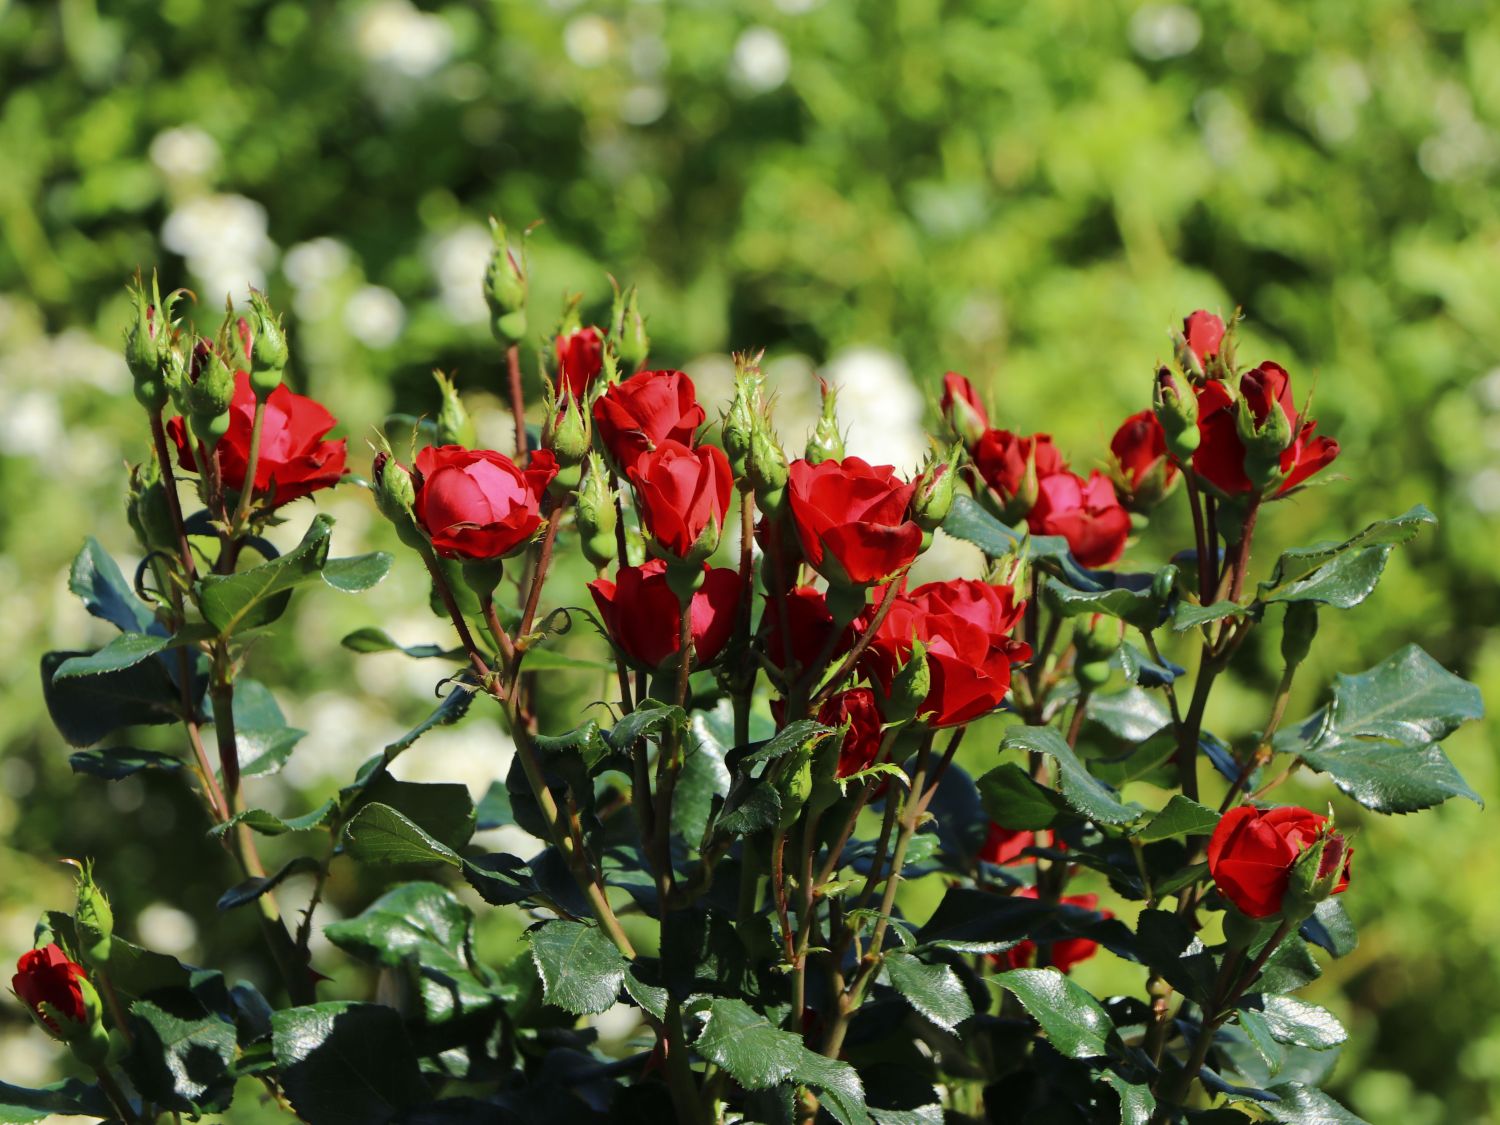 dauerblühende Rose Zepeti ® im 5 Liter Pflanzcontainer